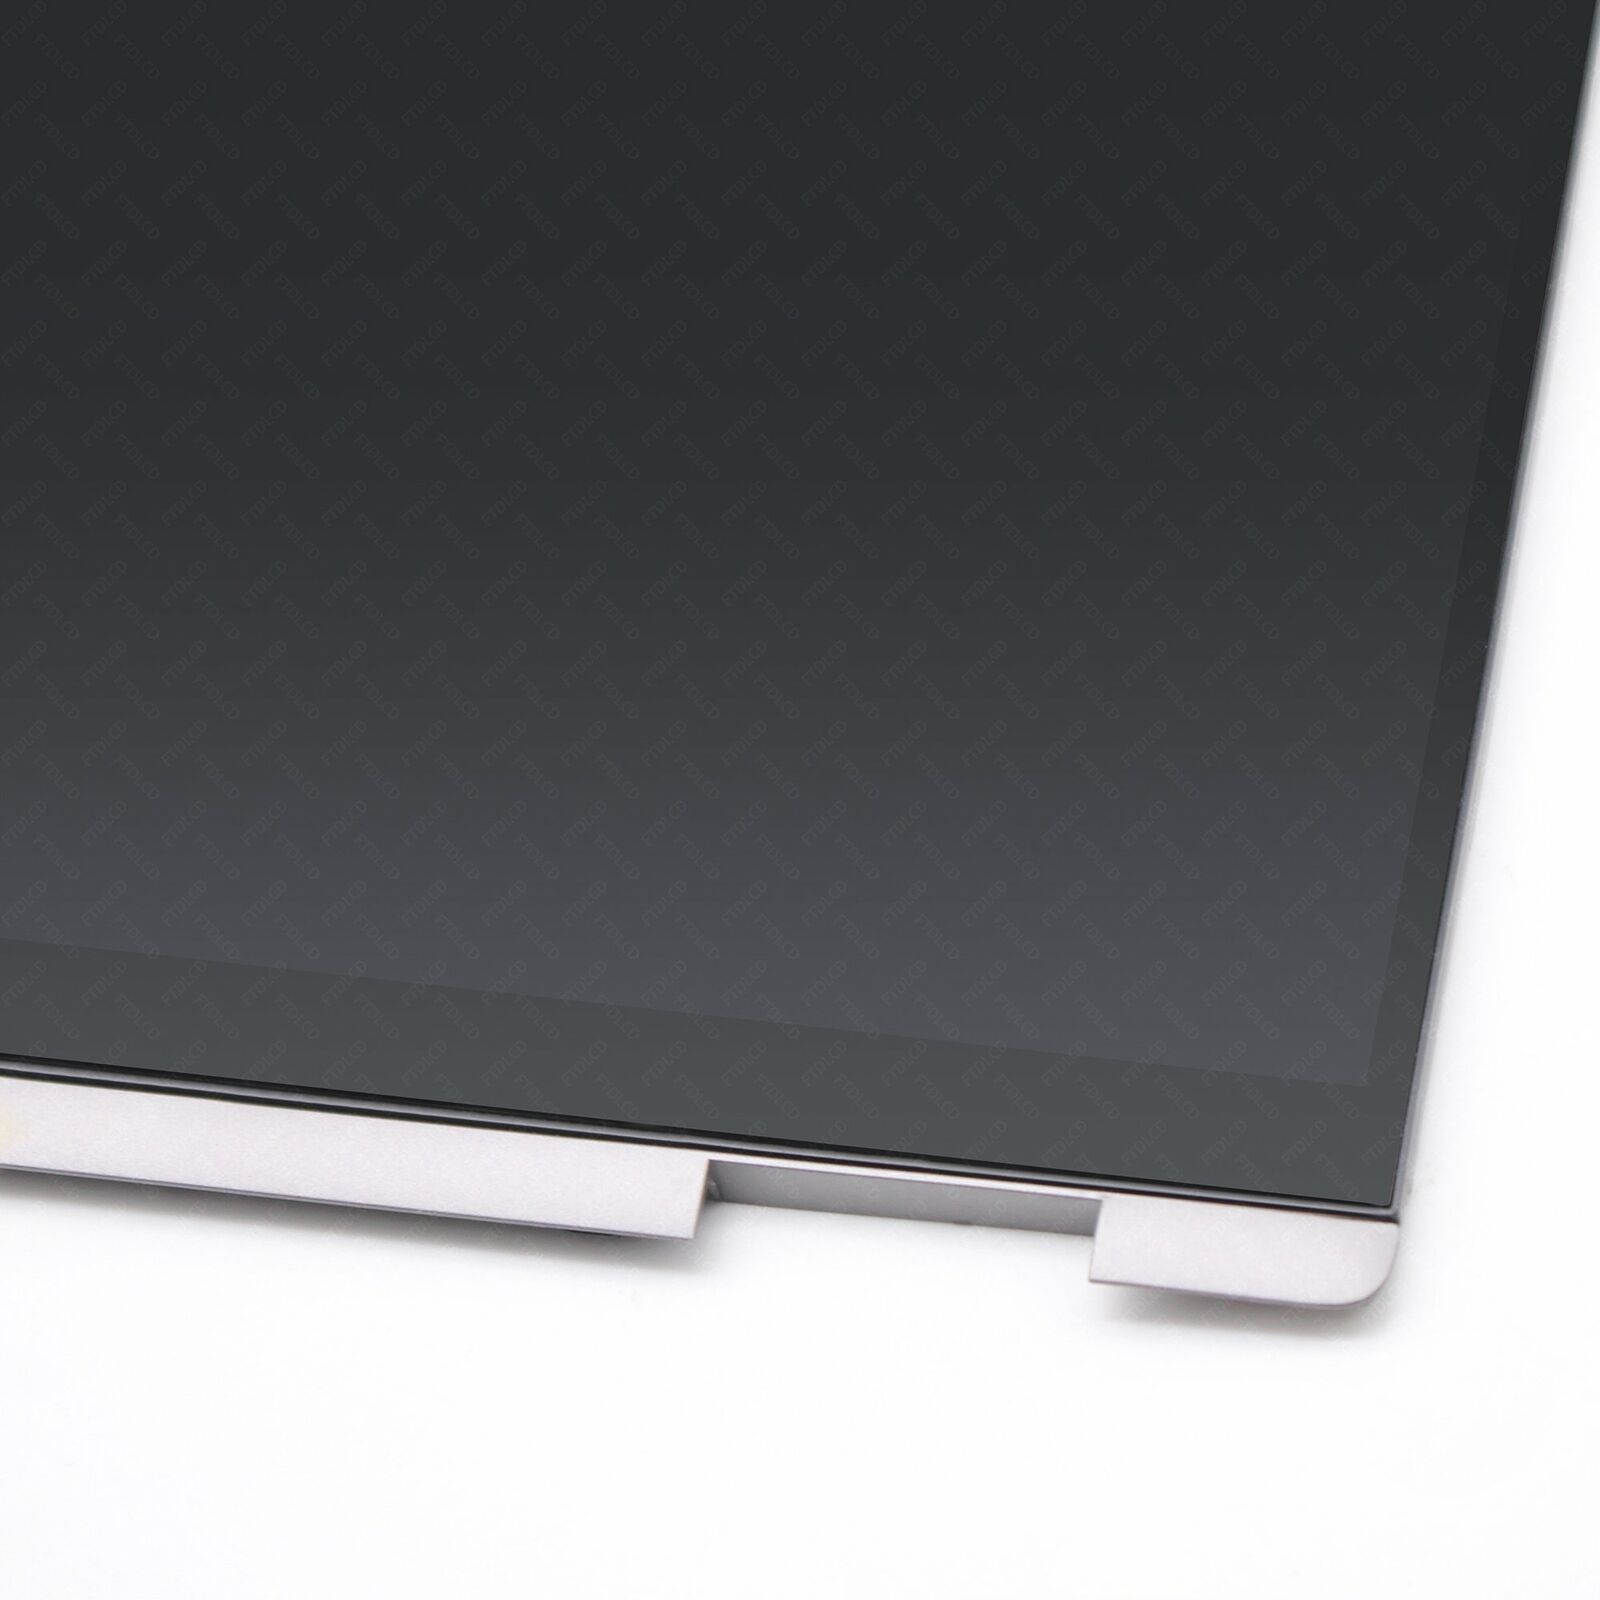 Penggantian Skrin LCD untuk HP Chromebook X360 14C-CA - 4 